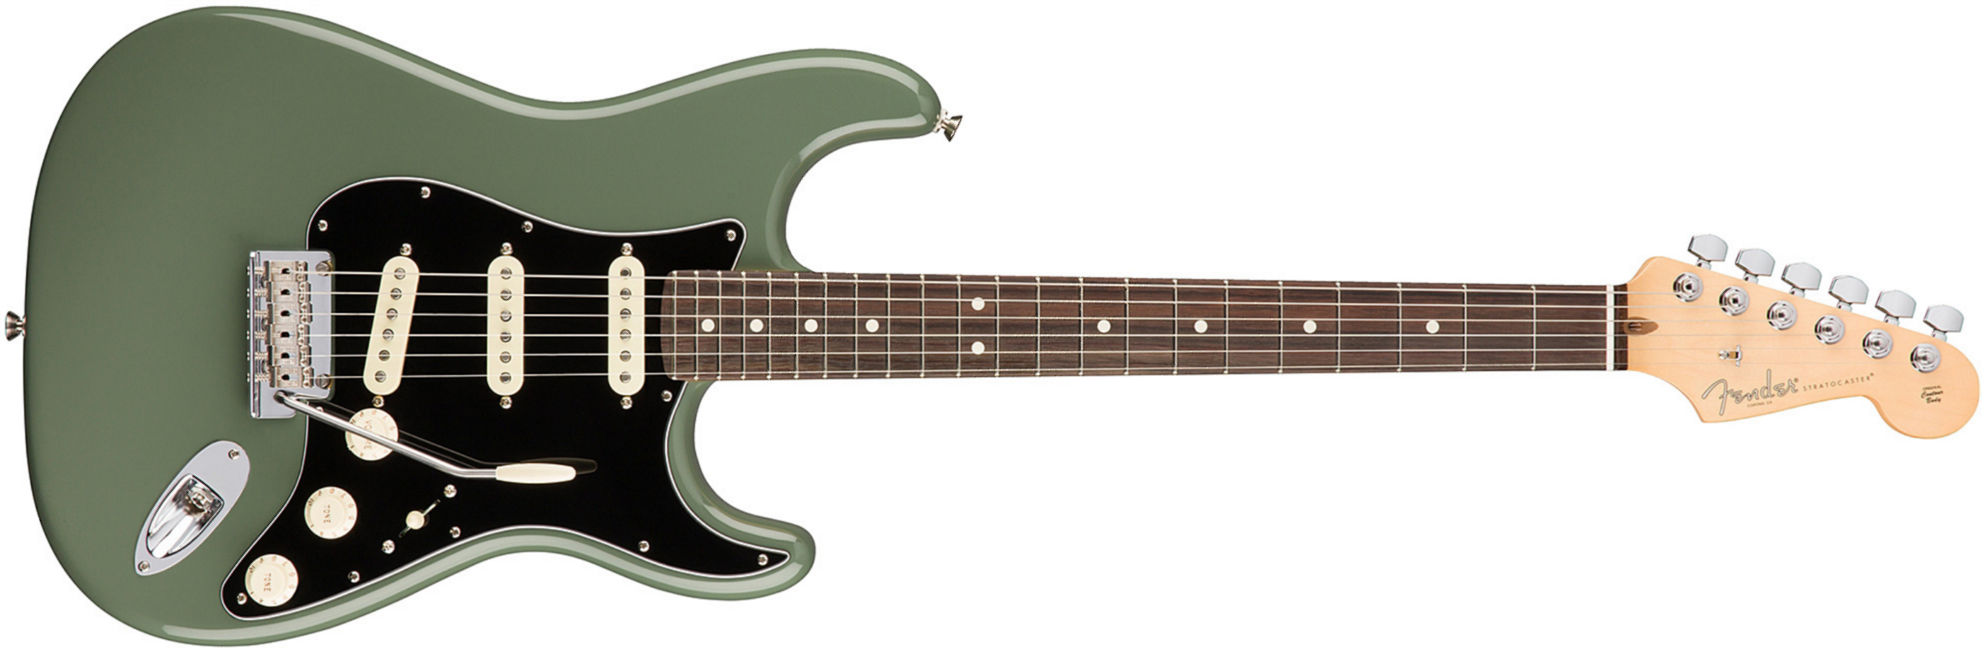 Fender Strat American Professional 2017 3s Usa Rw - Antique Olive - Guitare Électrique Forme Str - Main picture